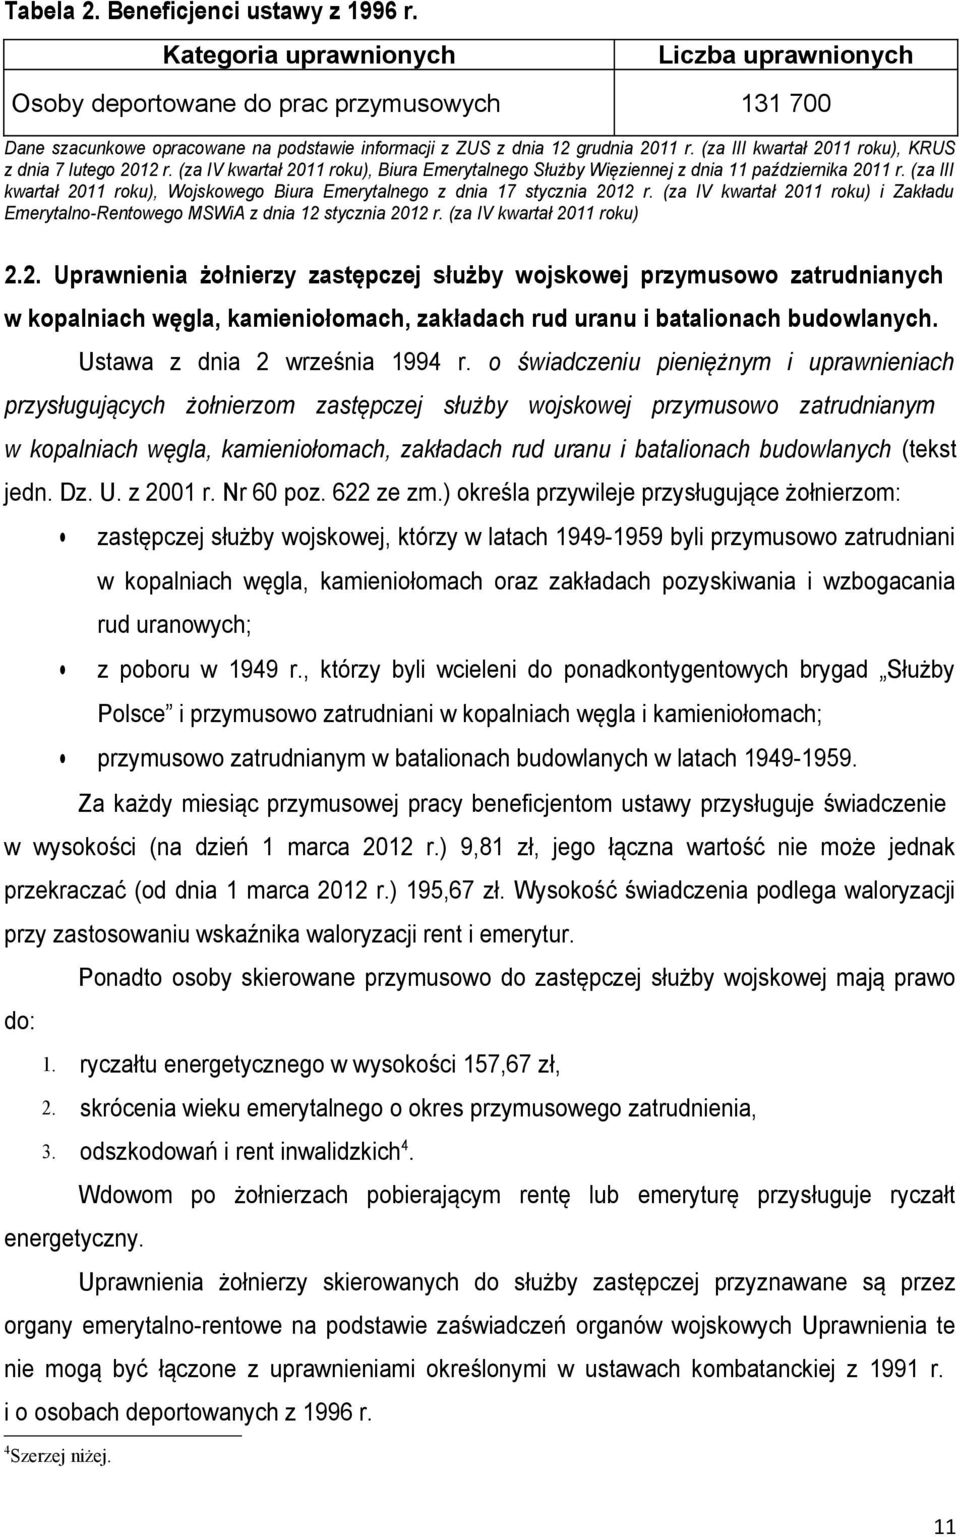 (za III kwartał 2011 roku), KRUS z dnia 7 lutego 2012 r. (za IV kwartał 2011 roku), Biura Emerytalnego Służby Więziennej z dnia 11 października 2011 r.